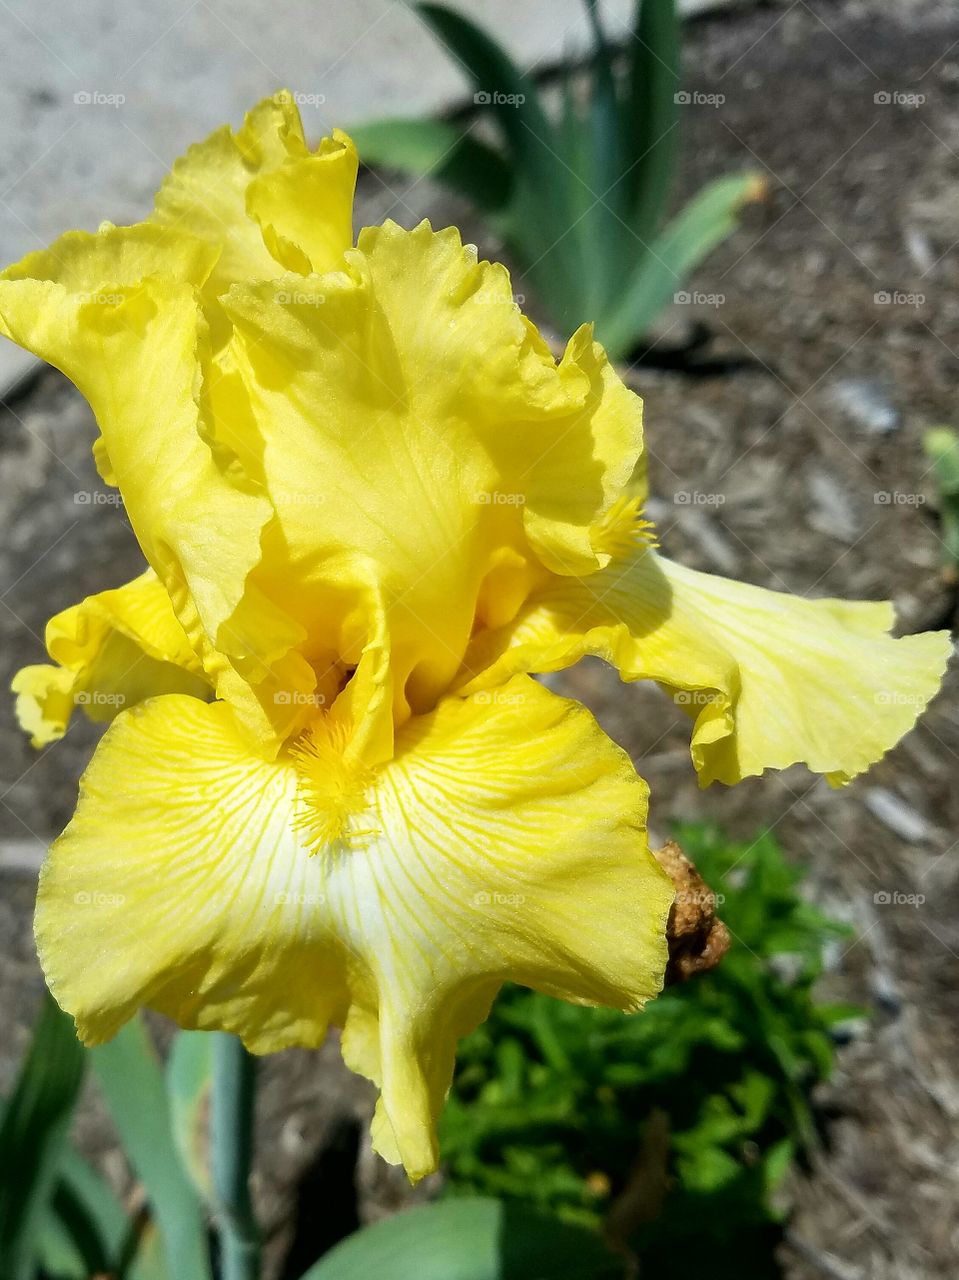 Vibrant yellow iris